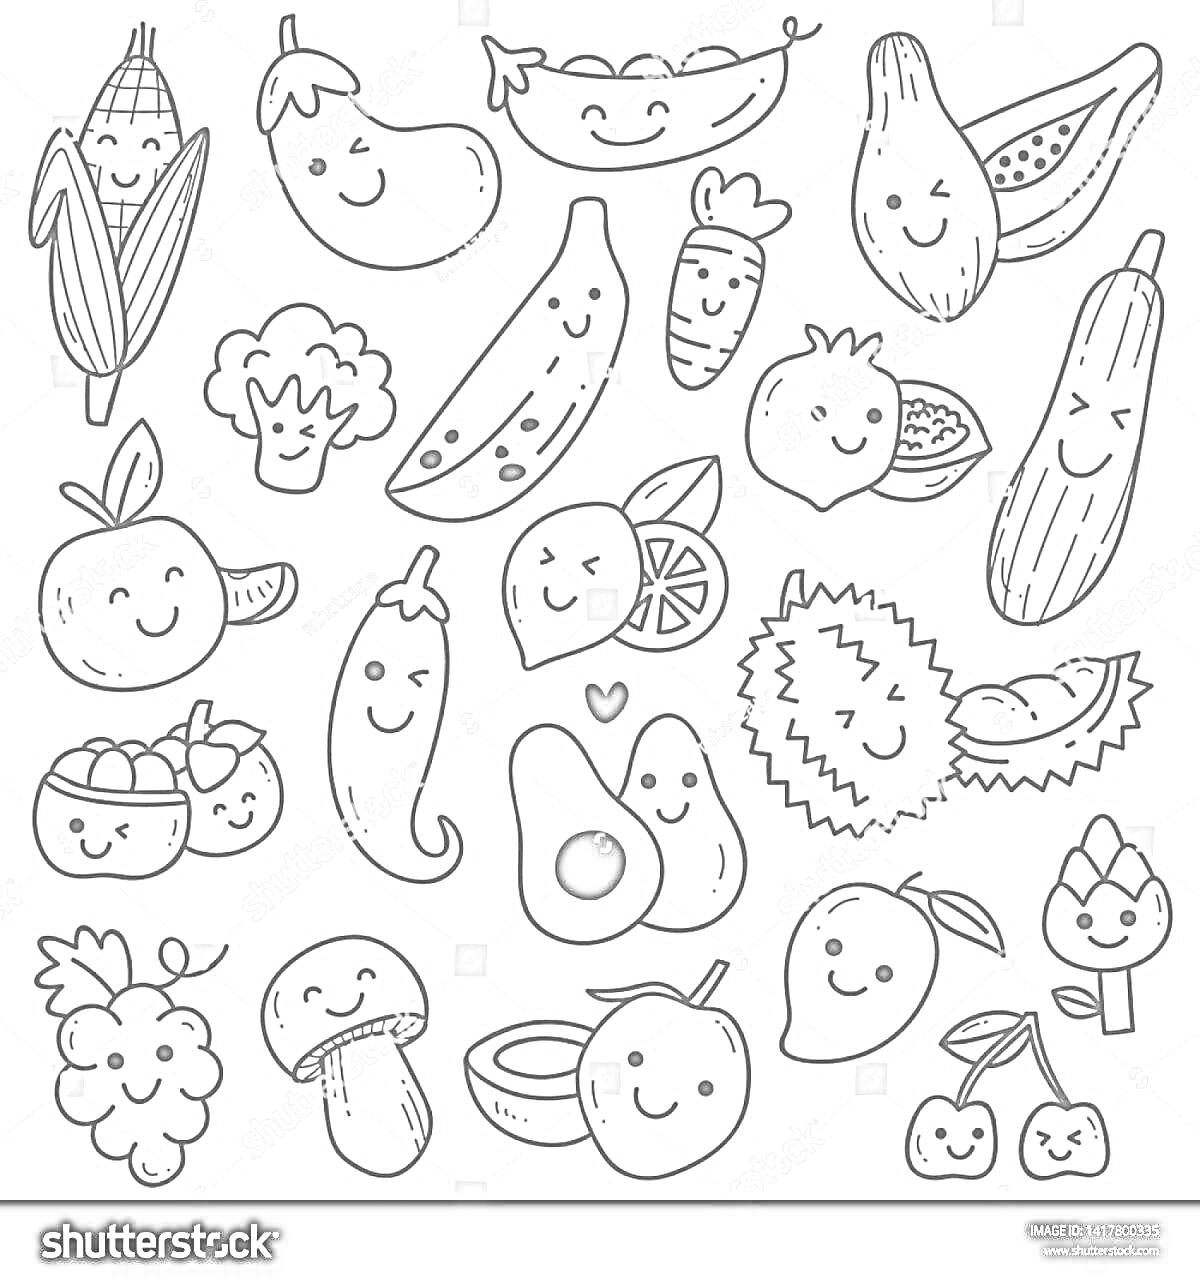 Раскраска Счастливые фрукты и овощи - кукуруза, баклажан, горох, авокадо, арбуз, клубника, киви, апельсин, грибы, абрикос, перец, лимон, апельсиновый ломтик, дуриан, брокколи, кабачок, черника, лукошко с ягодами, малина, кокос, вишня